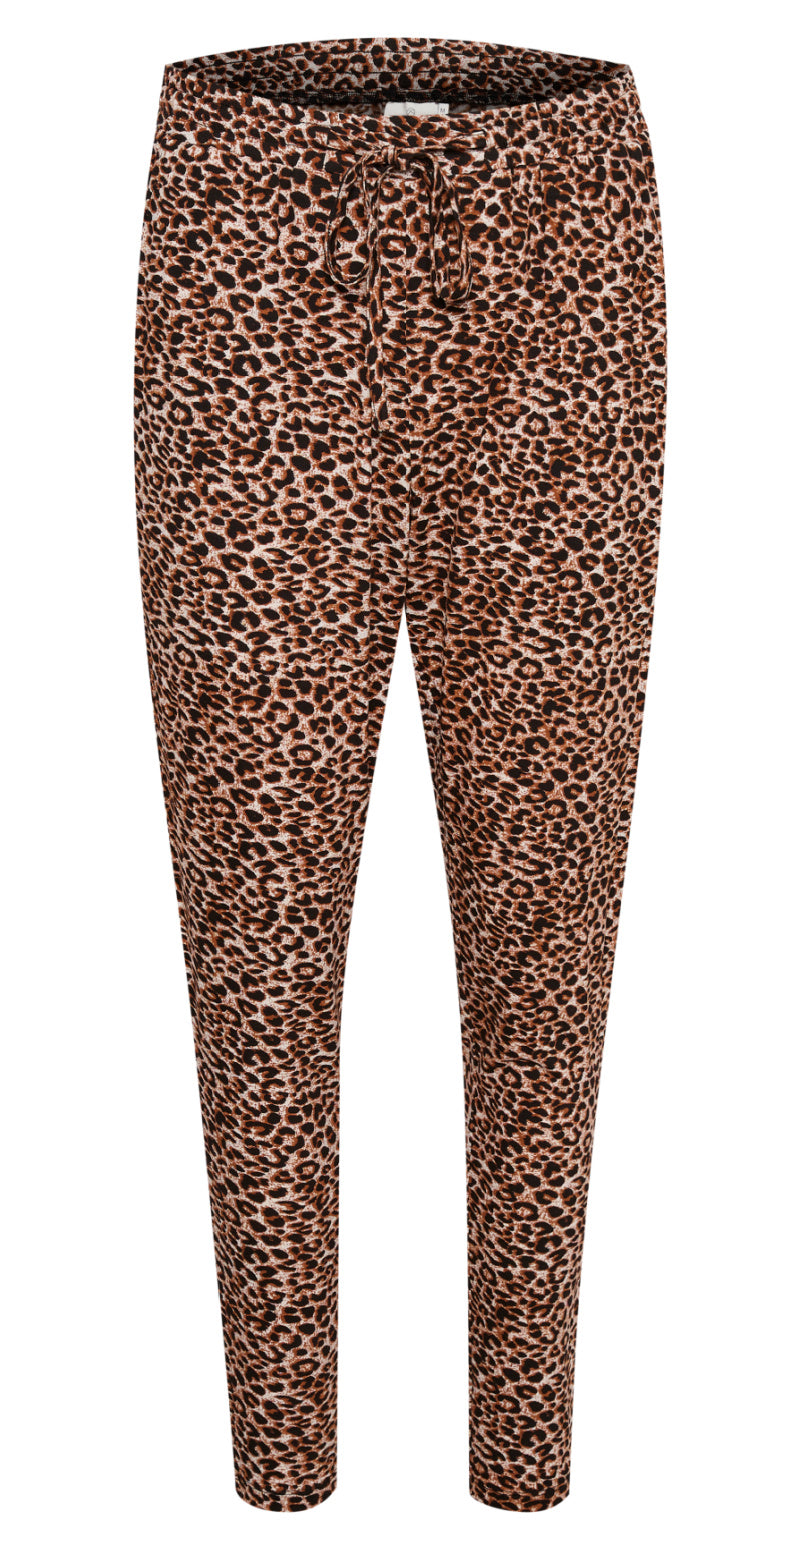 Bukser med leopard print brun